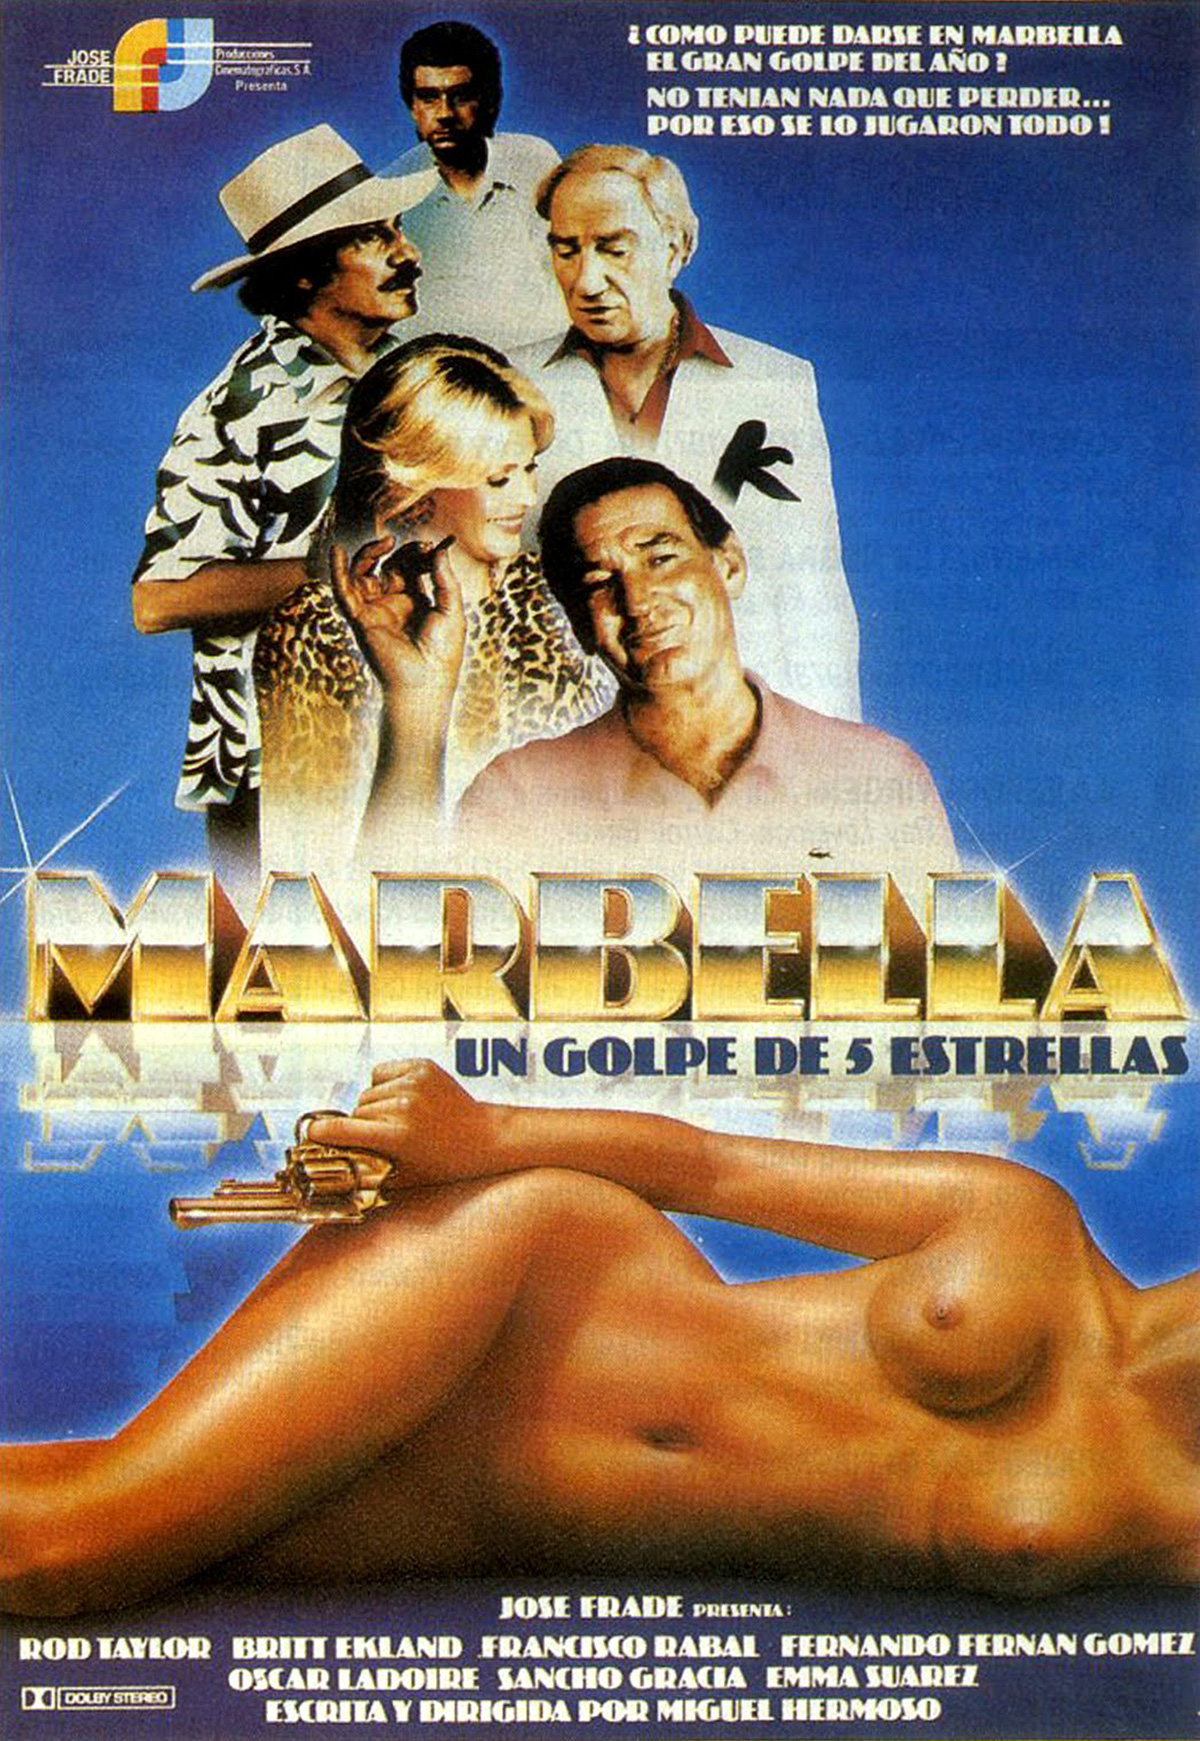 Marbella (Un golpe de conco estrellas